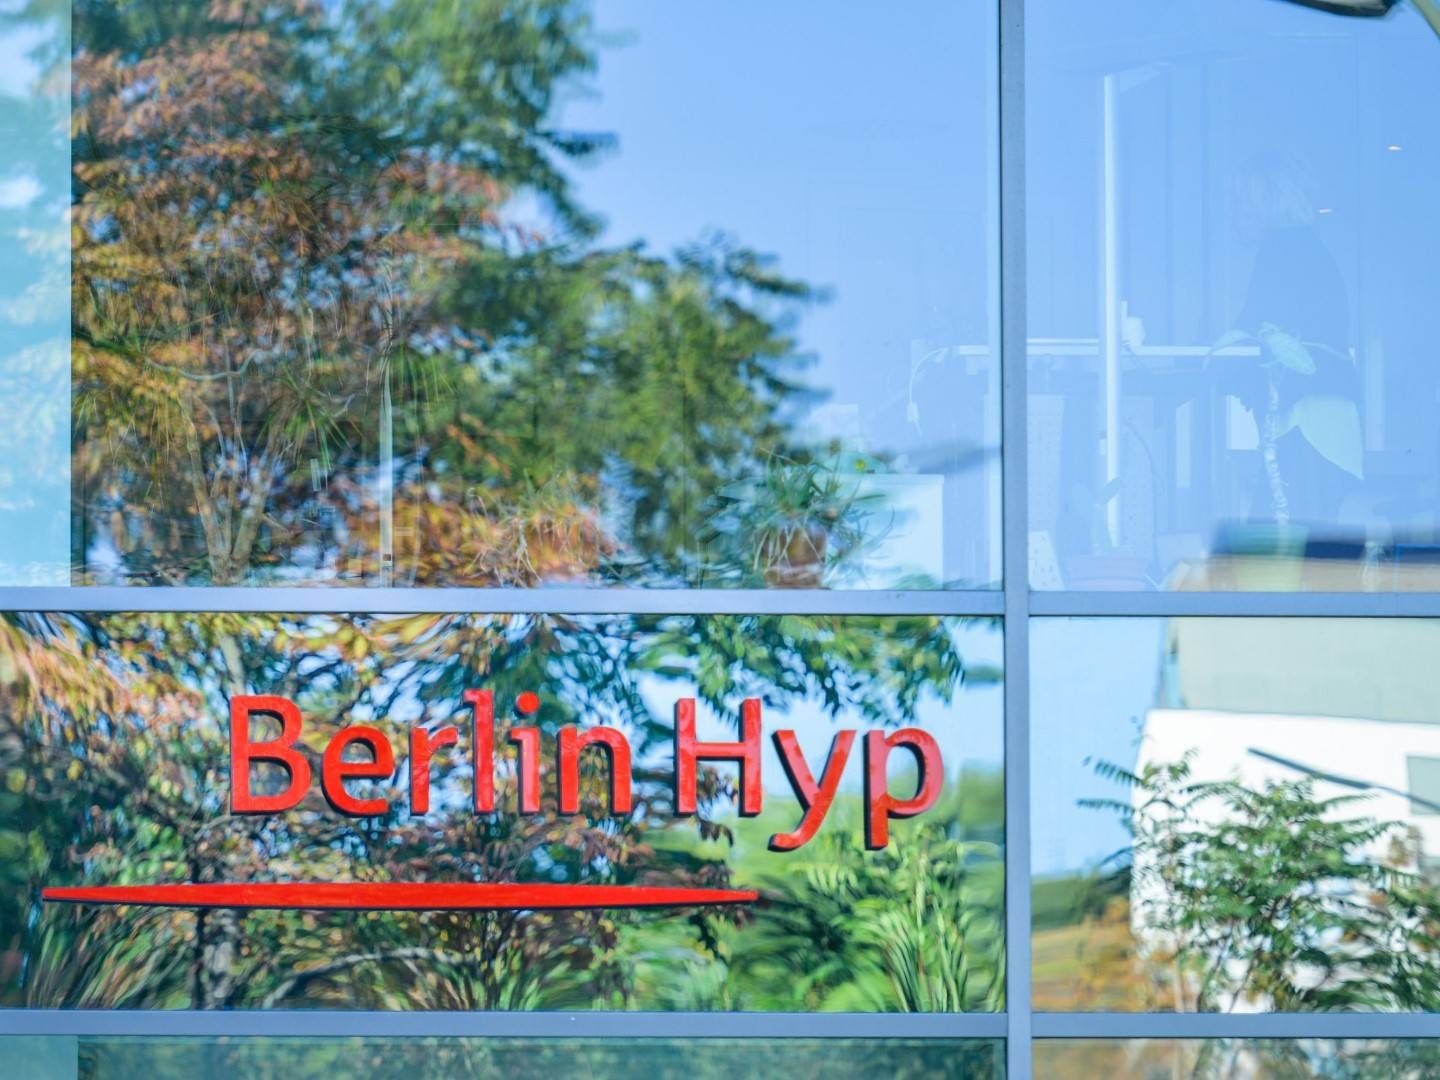 Das Logo der Berlin Hyp | Foto: picture alliance / Bildagentur-online/Joko | Bildagentur-online/Joko